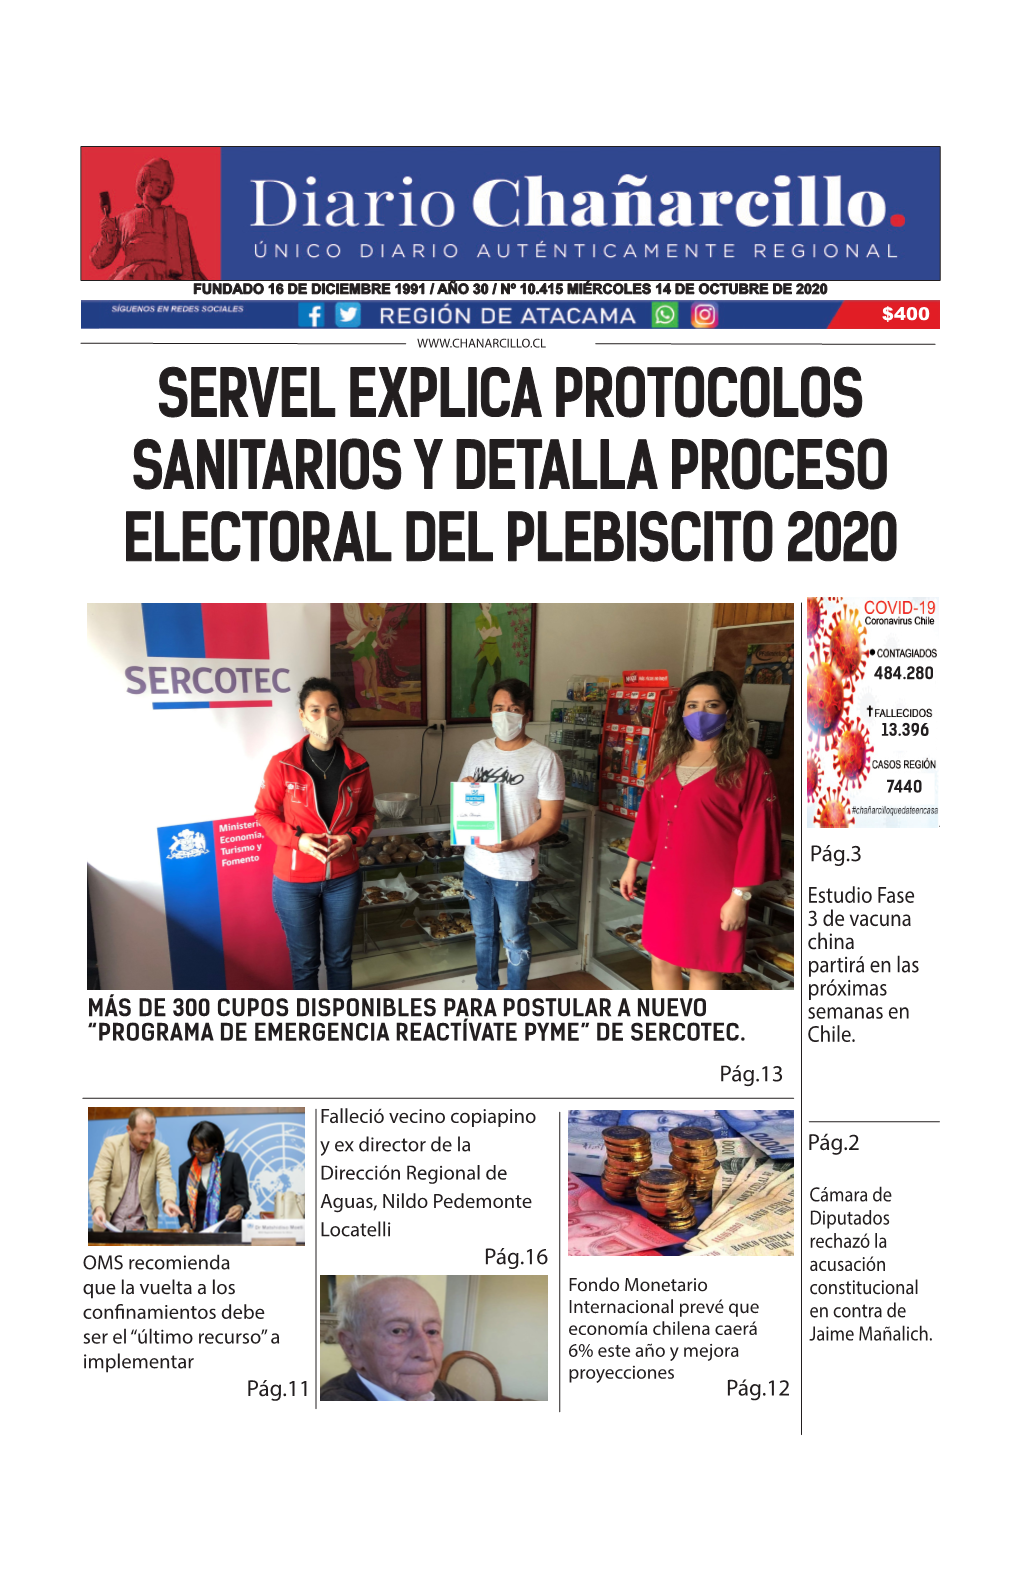 Servel Explica Protocolos Sanitarios Y Detalla Proceso Electoral Del Plebiscito 2020